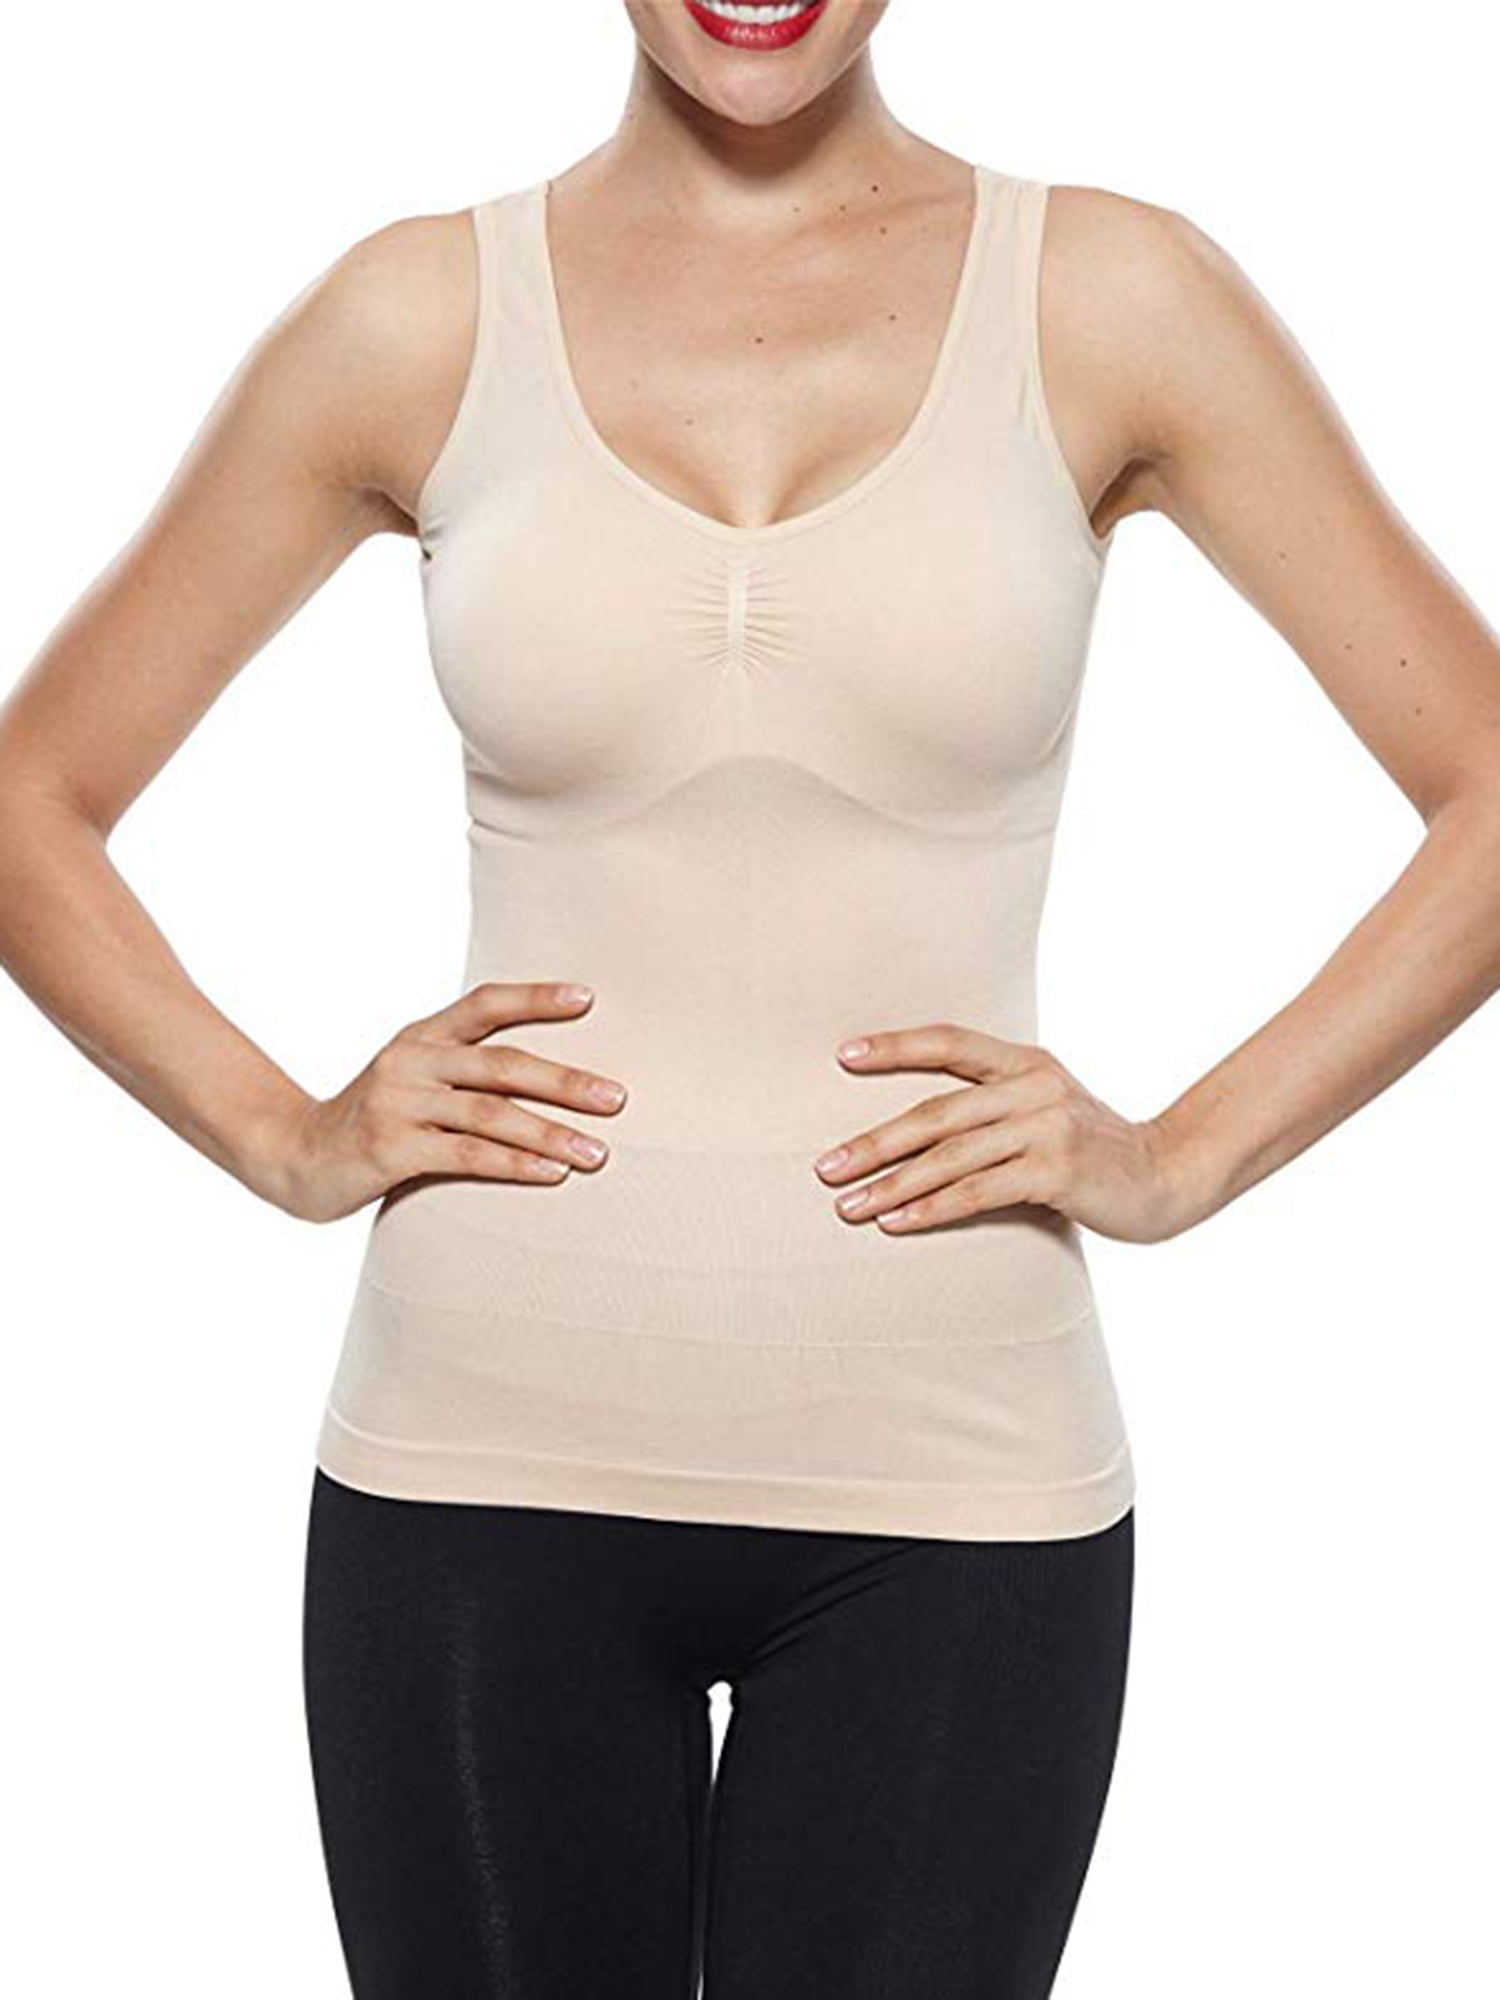 LELINTA Women's Camisoles Tank Tops Plus Size Cami Shaper Firm Tummy  Control Body Shaper Built in Bra Undershirt Tank Top Shapewear